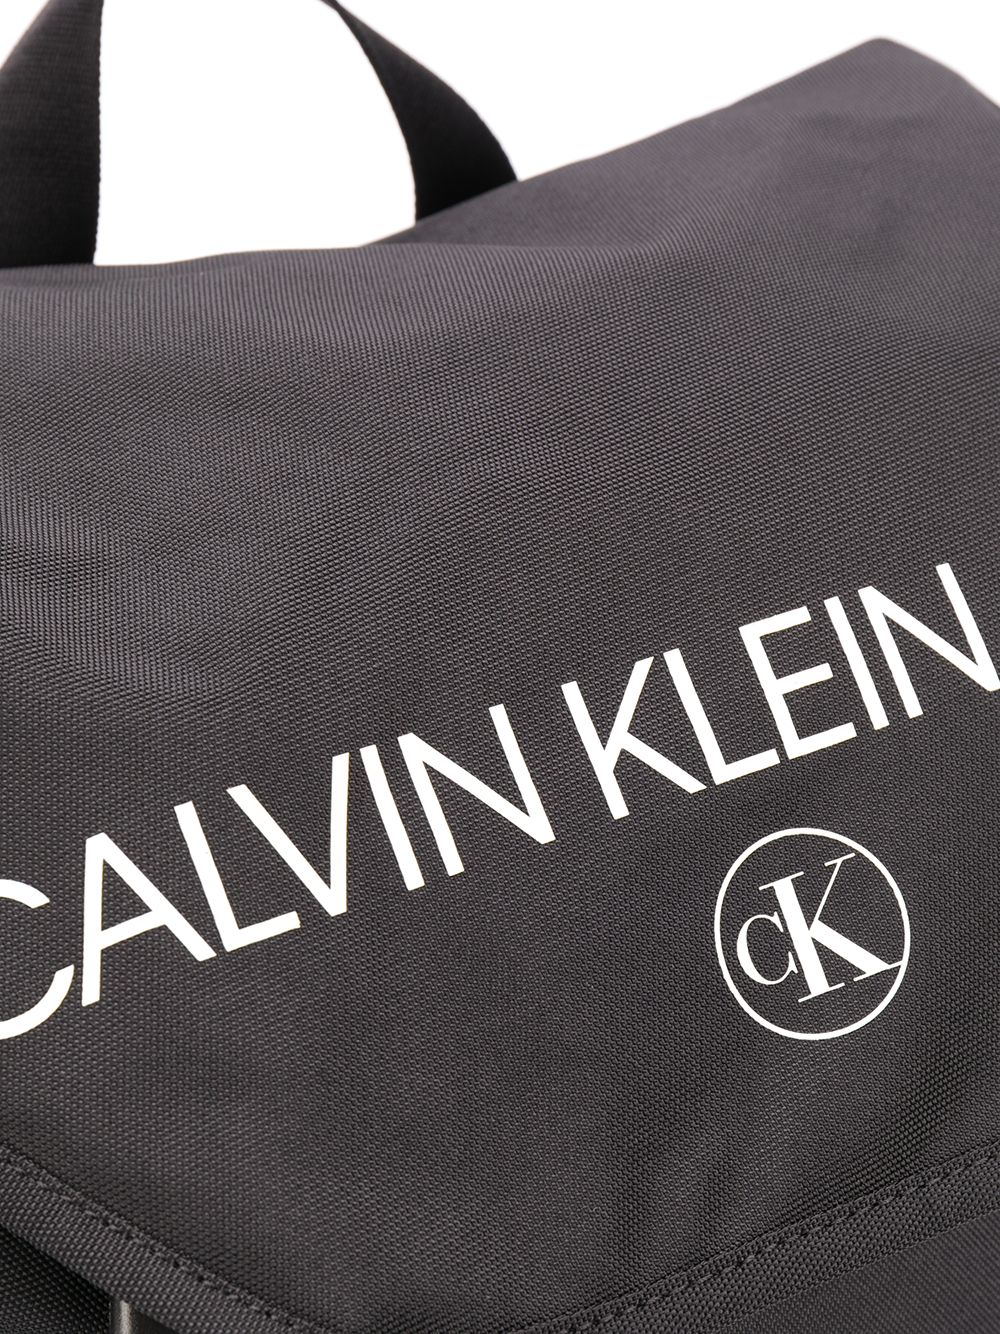 фото Calvin klein рюкзак с логотипом